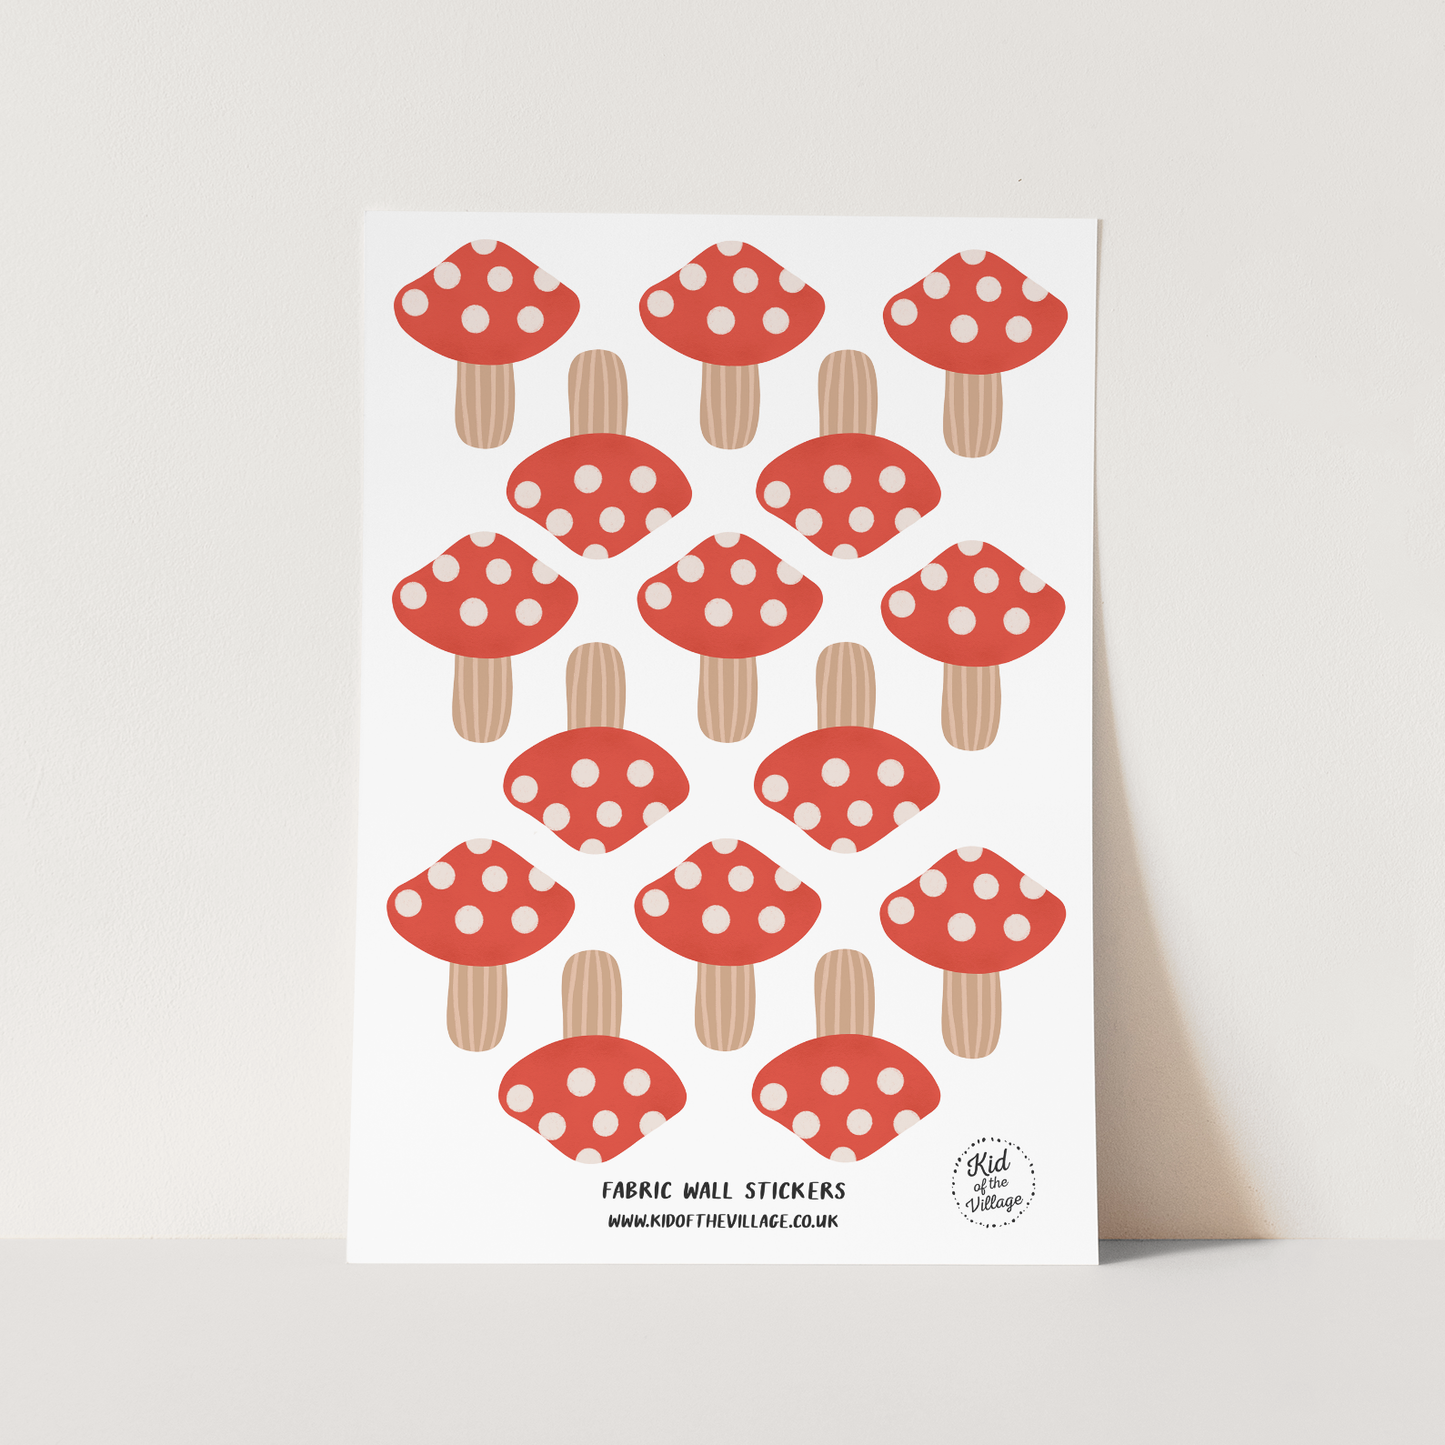 Mushroom / Fabric Wall Stickers